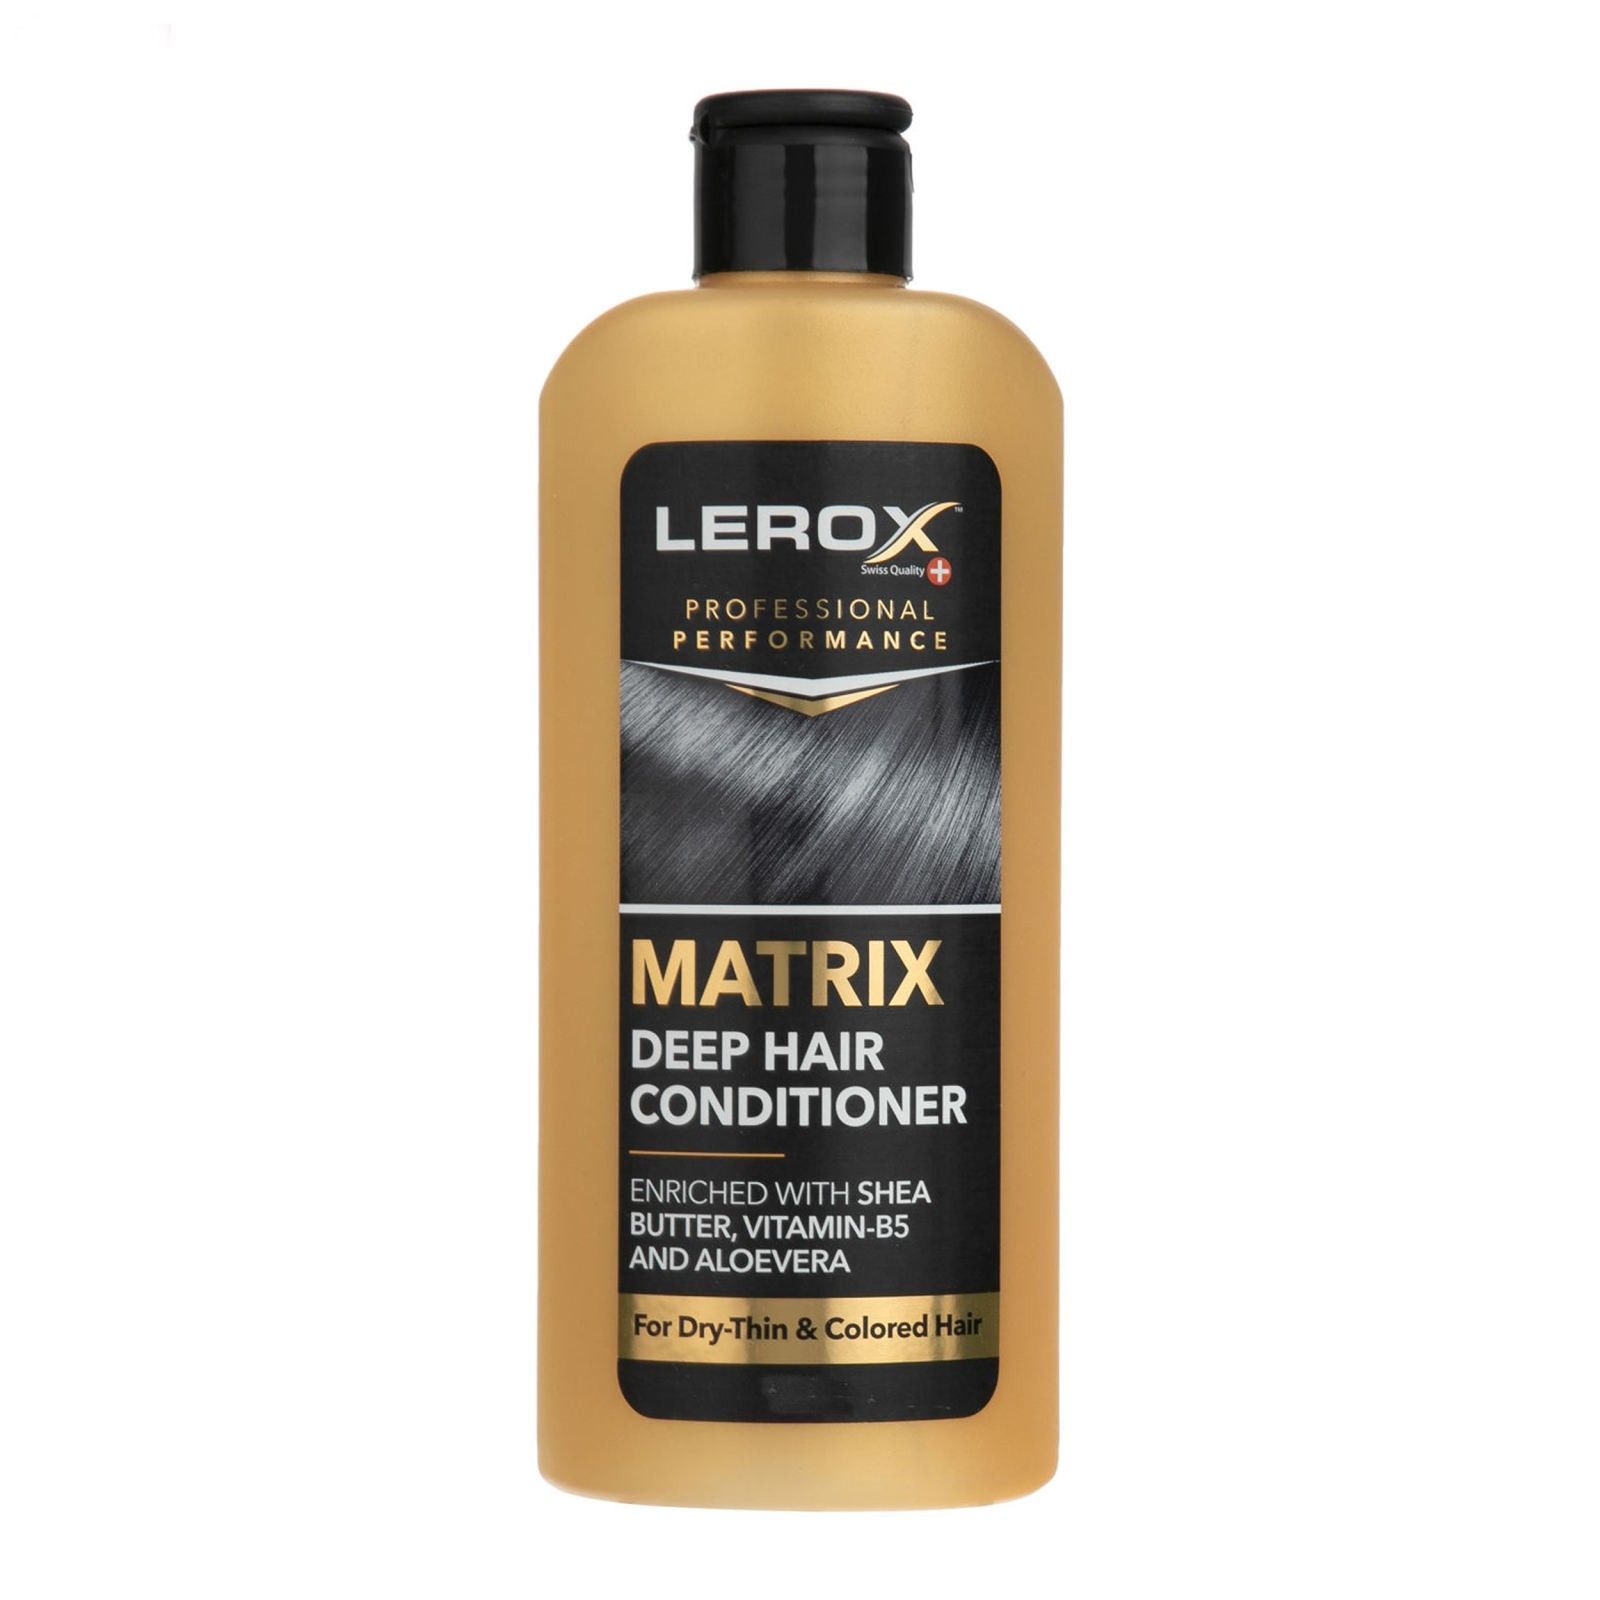 نرم کننده مو لروکس مدل MATRIX وزن 550 گرم -  - 1